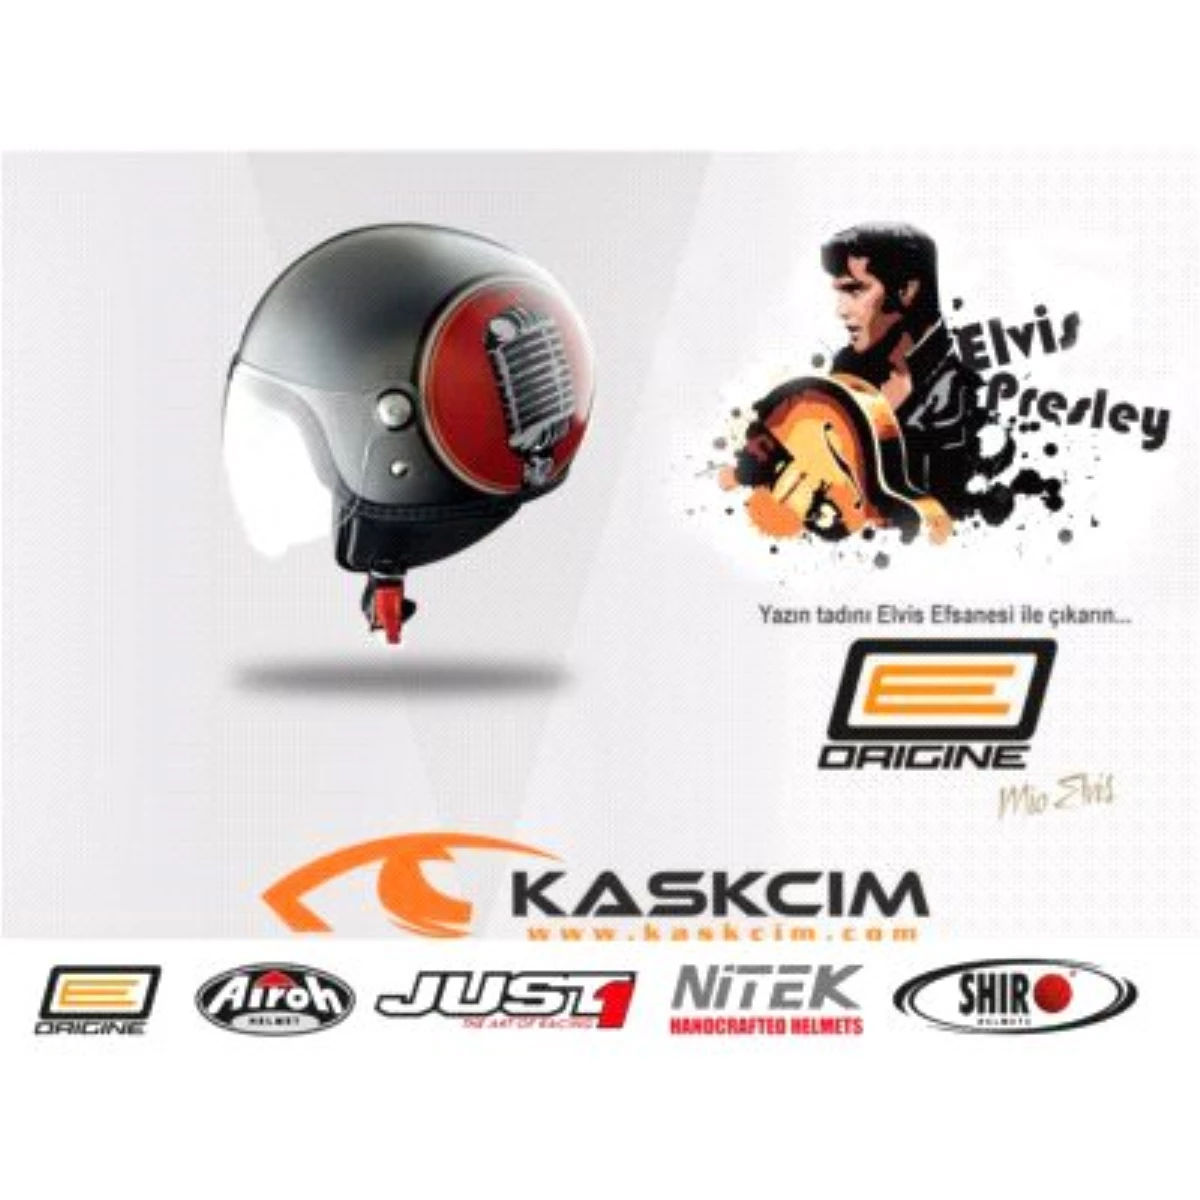 Kaskcim.com 2015 Model Kaskları ile Sizlerle